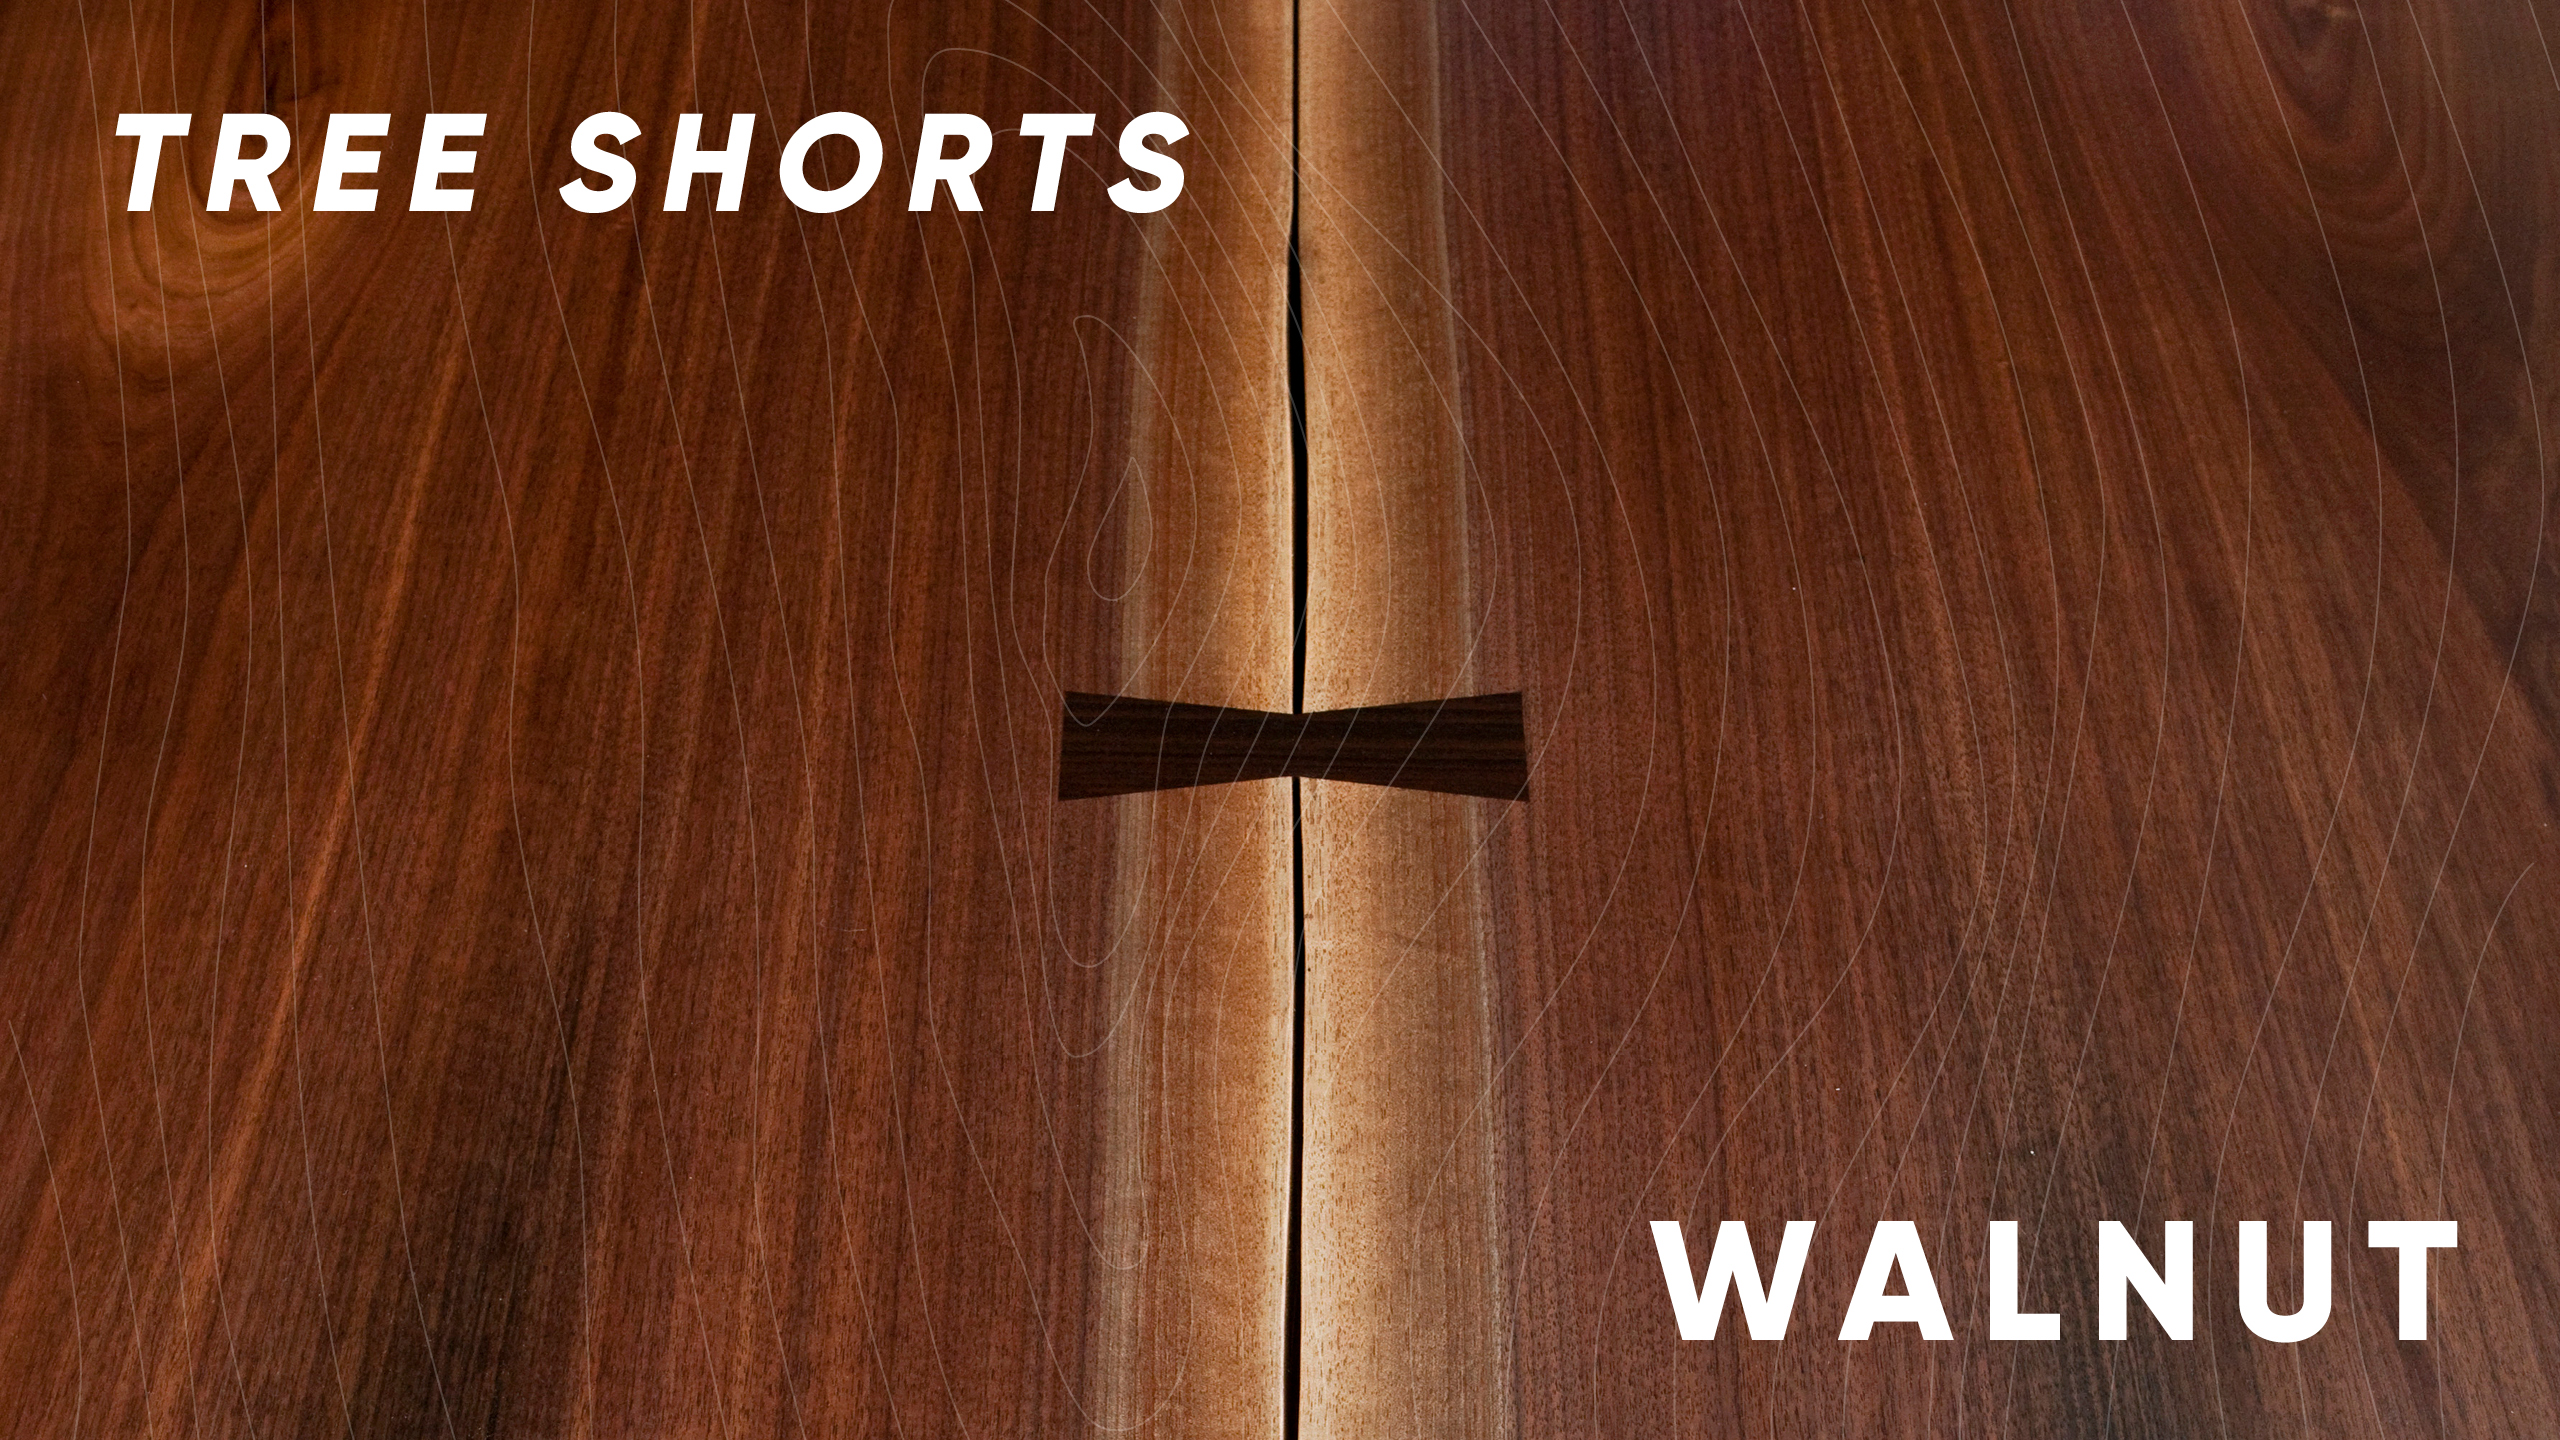 Tree shorts: walnut